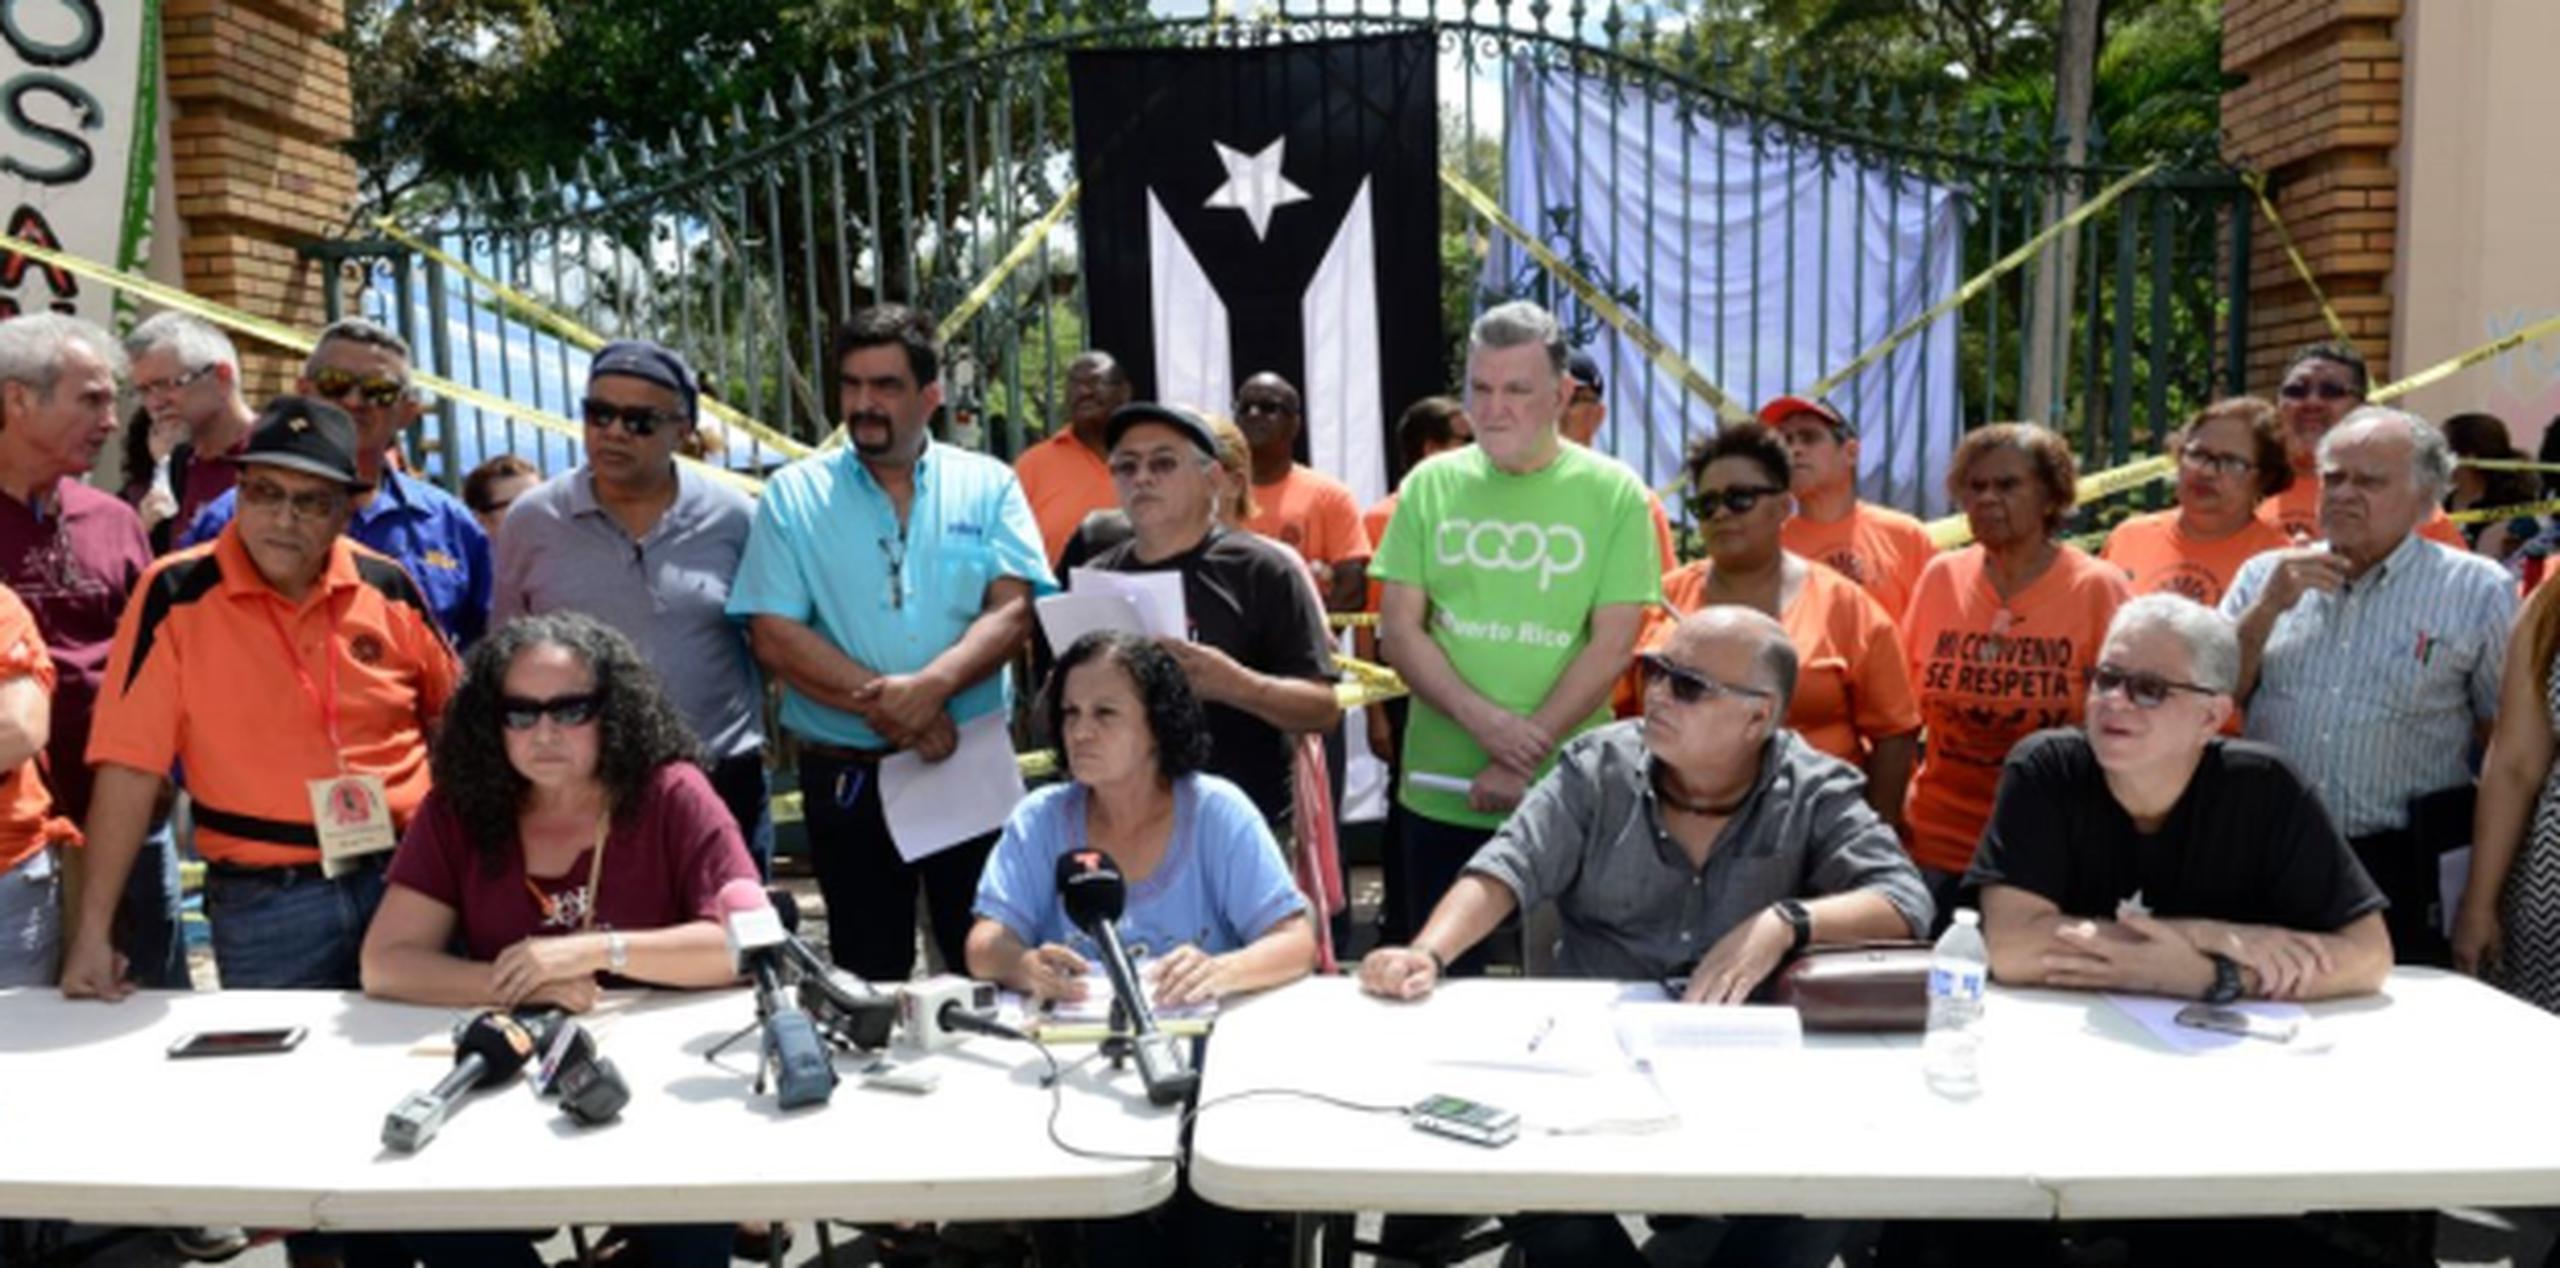 El colectivo anunció que llevará a cabo una jornada “por la justicia social y la solidaridad”. (gerald.lopez@gfrmedia.com)